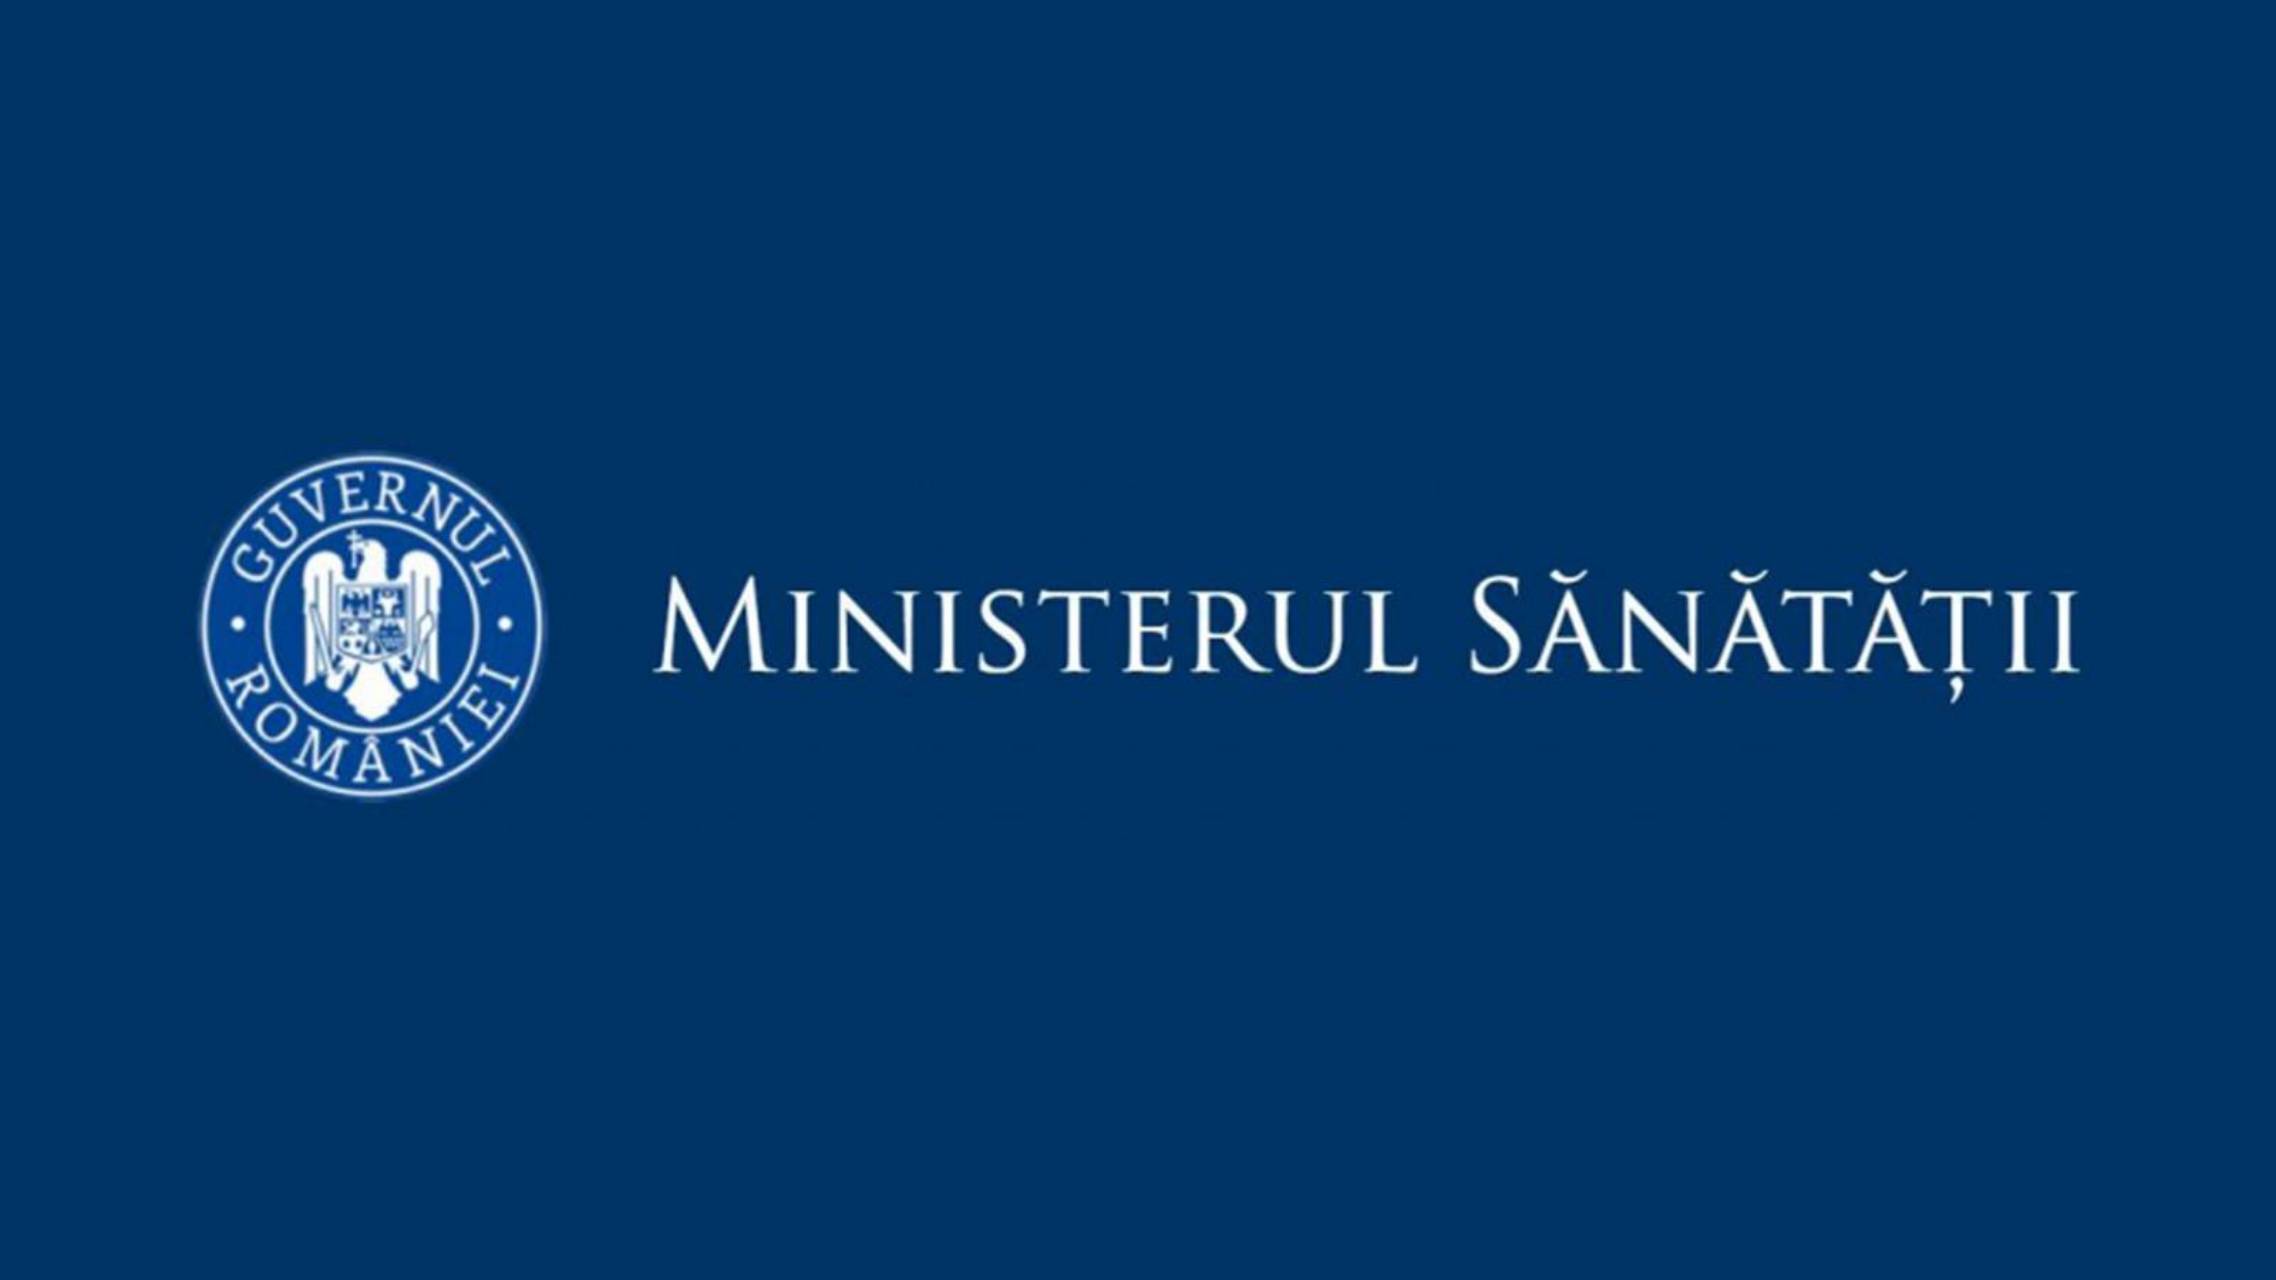 Ministerul Sanatatii Judete Romania cazuri noi coronavirus